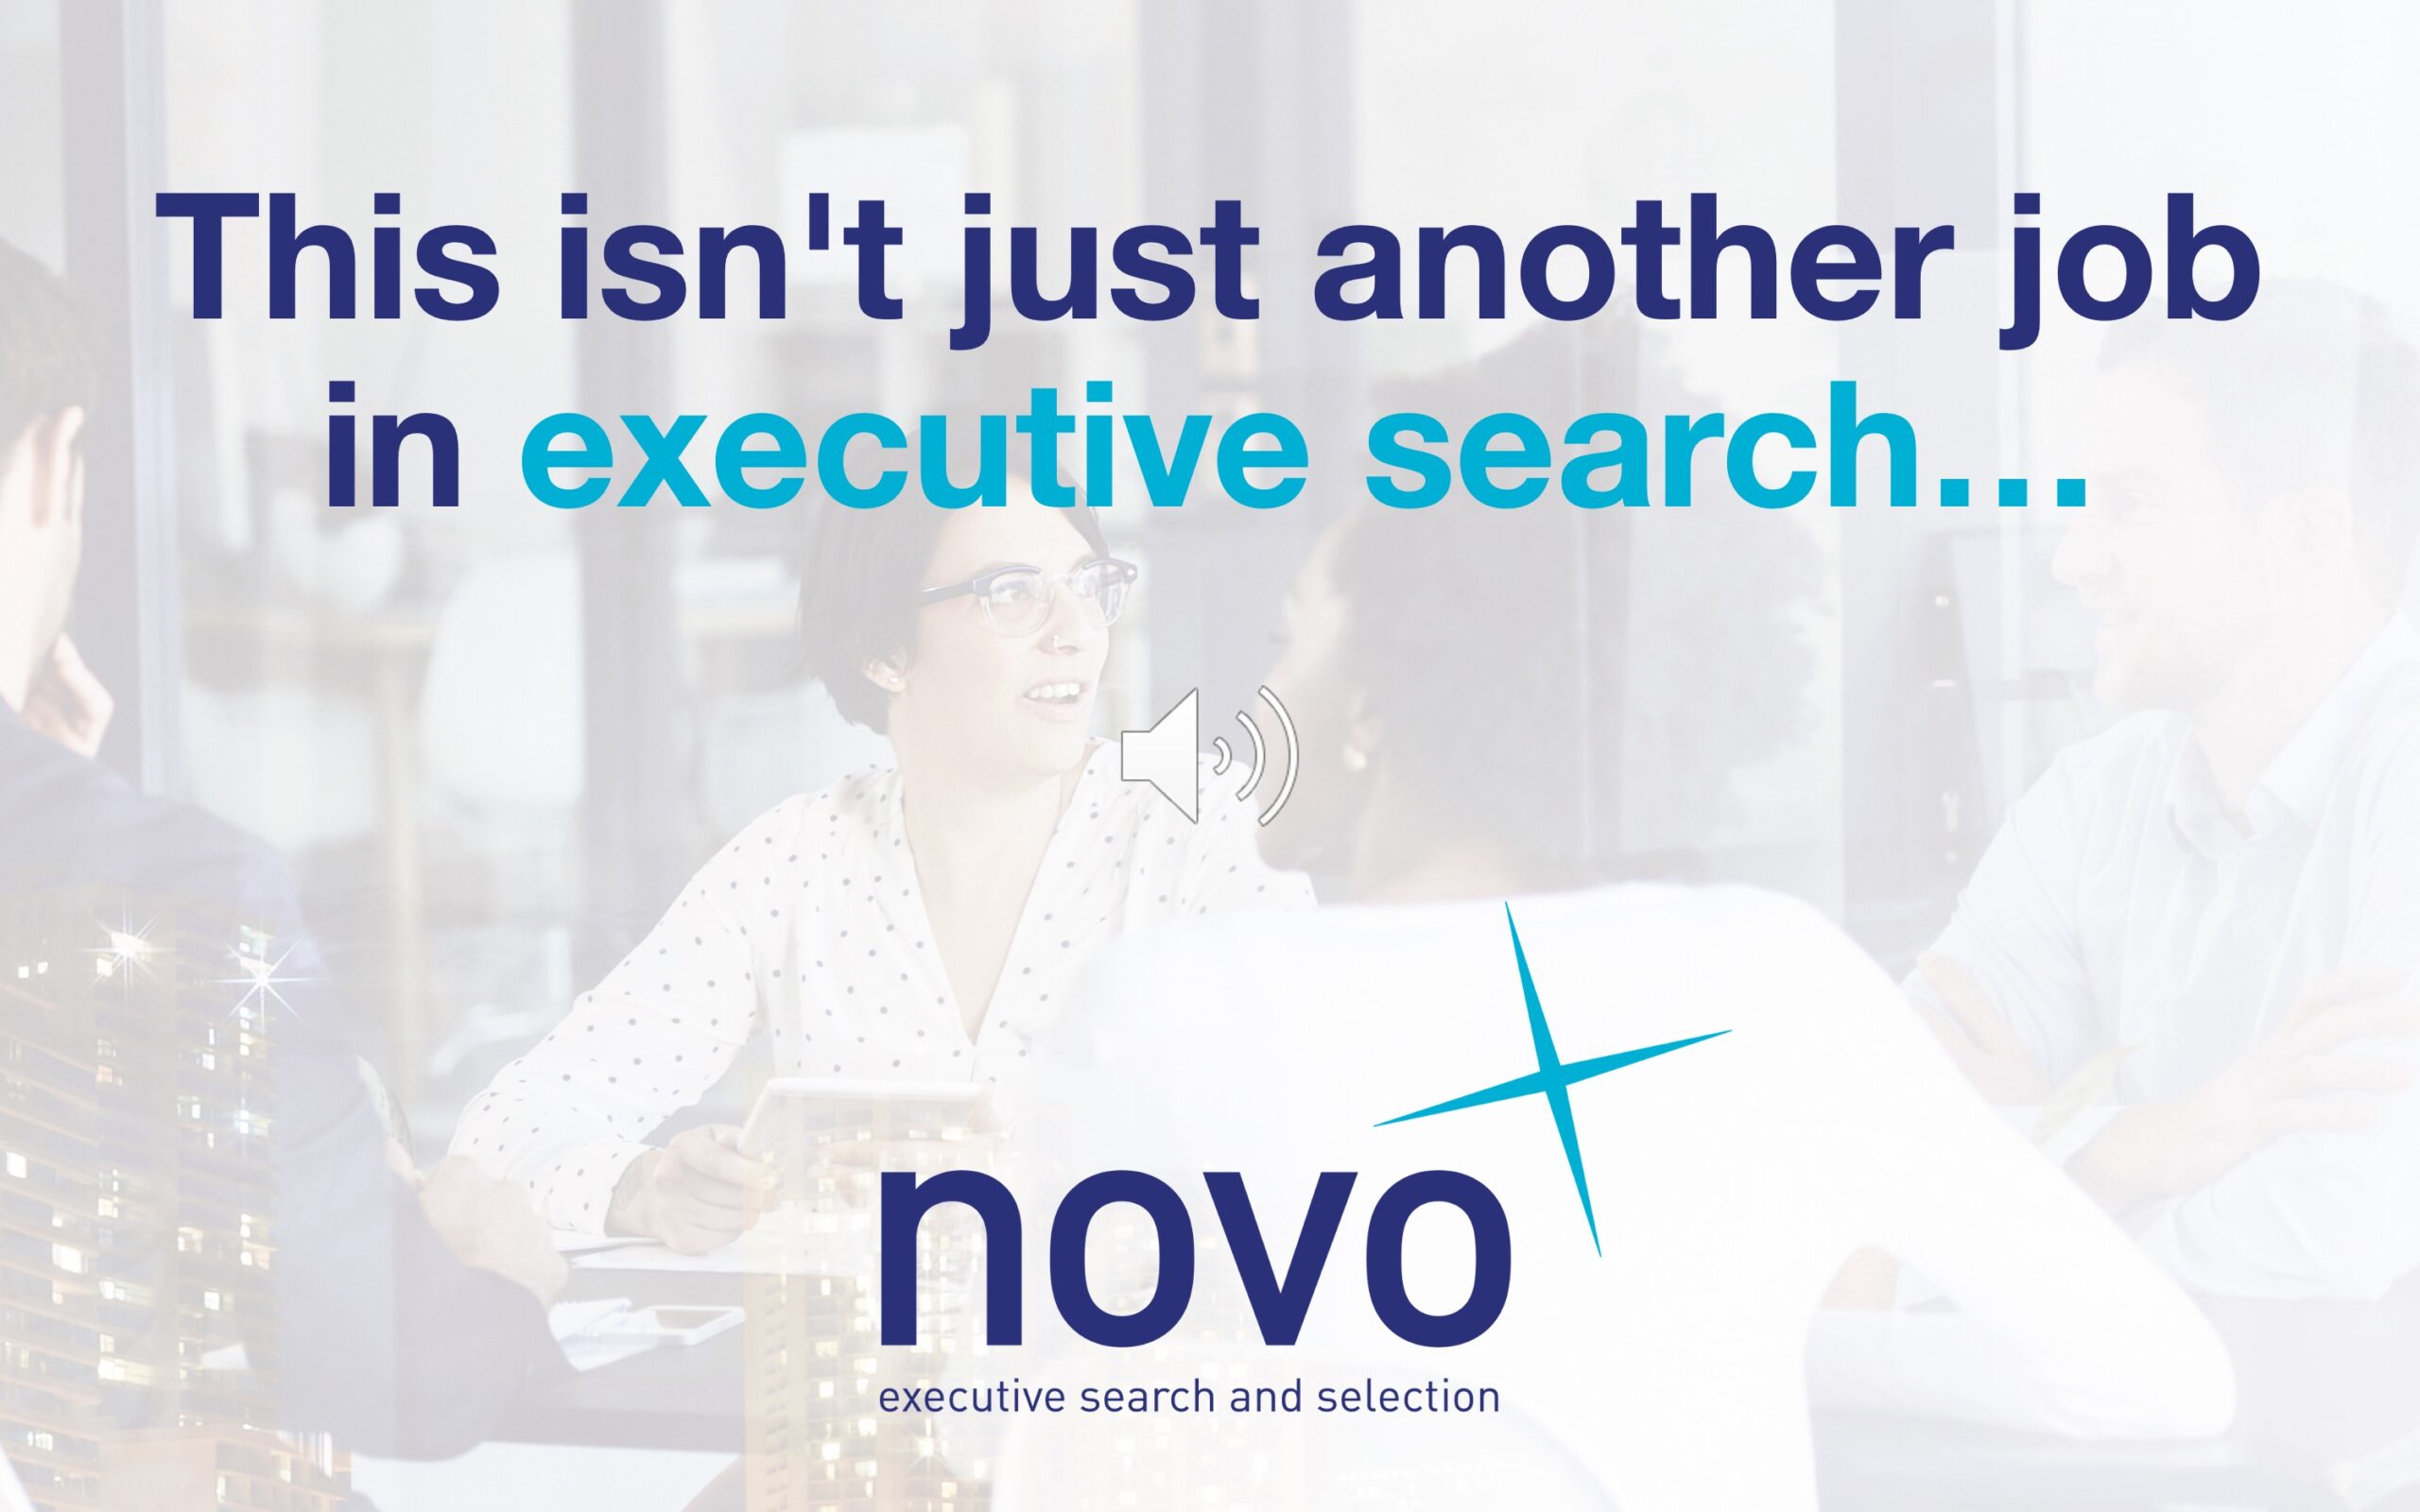 novo executive search